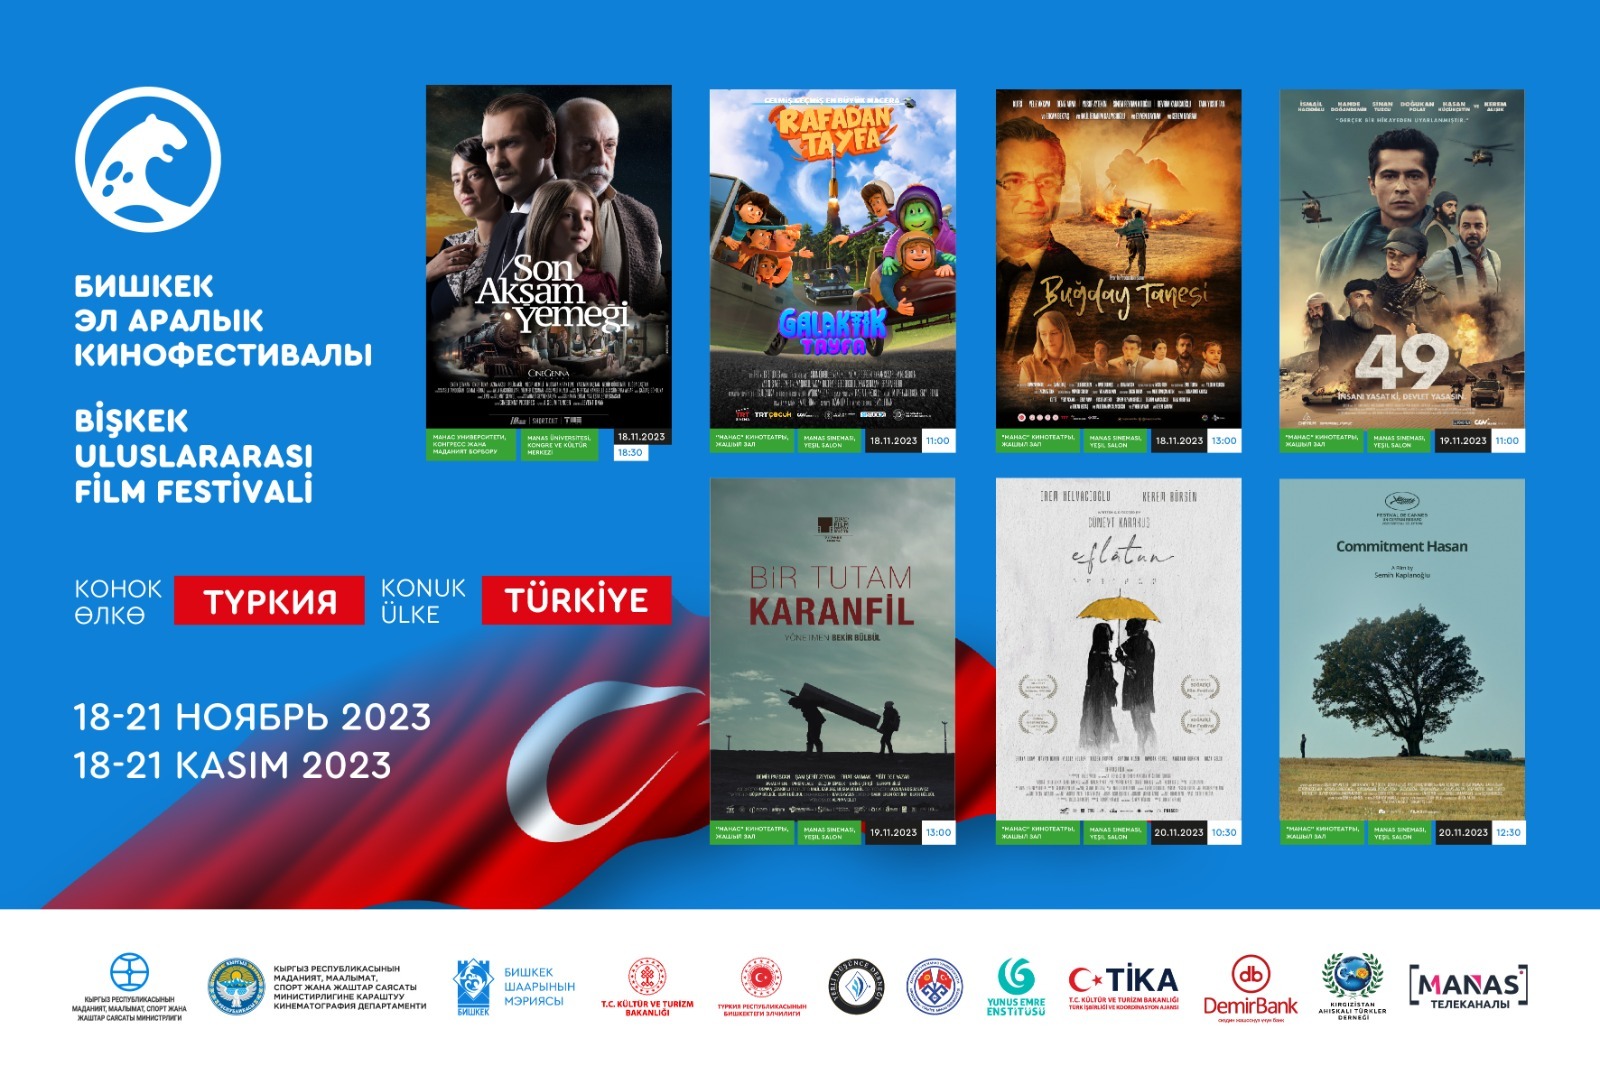 Бишкекте өтүүчү Эл аралык кинофестивалдын биринчи конок өлкөсү – Туркия болду